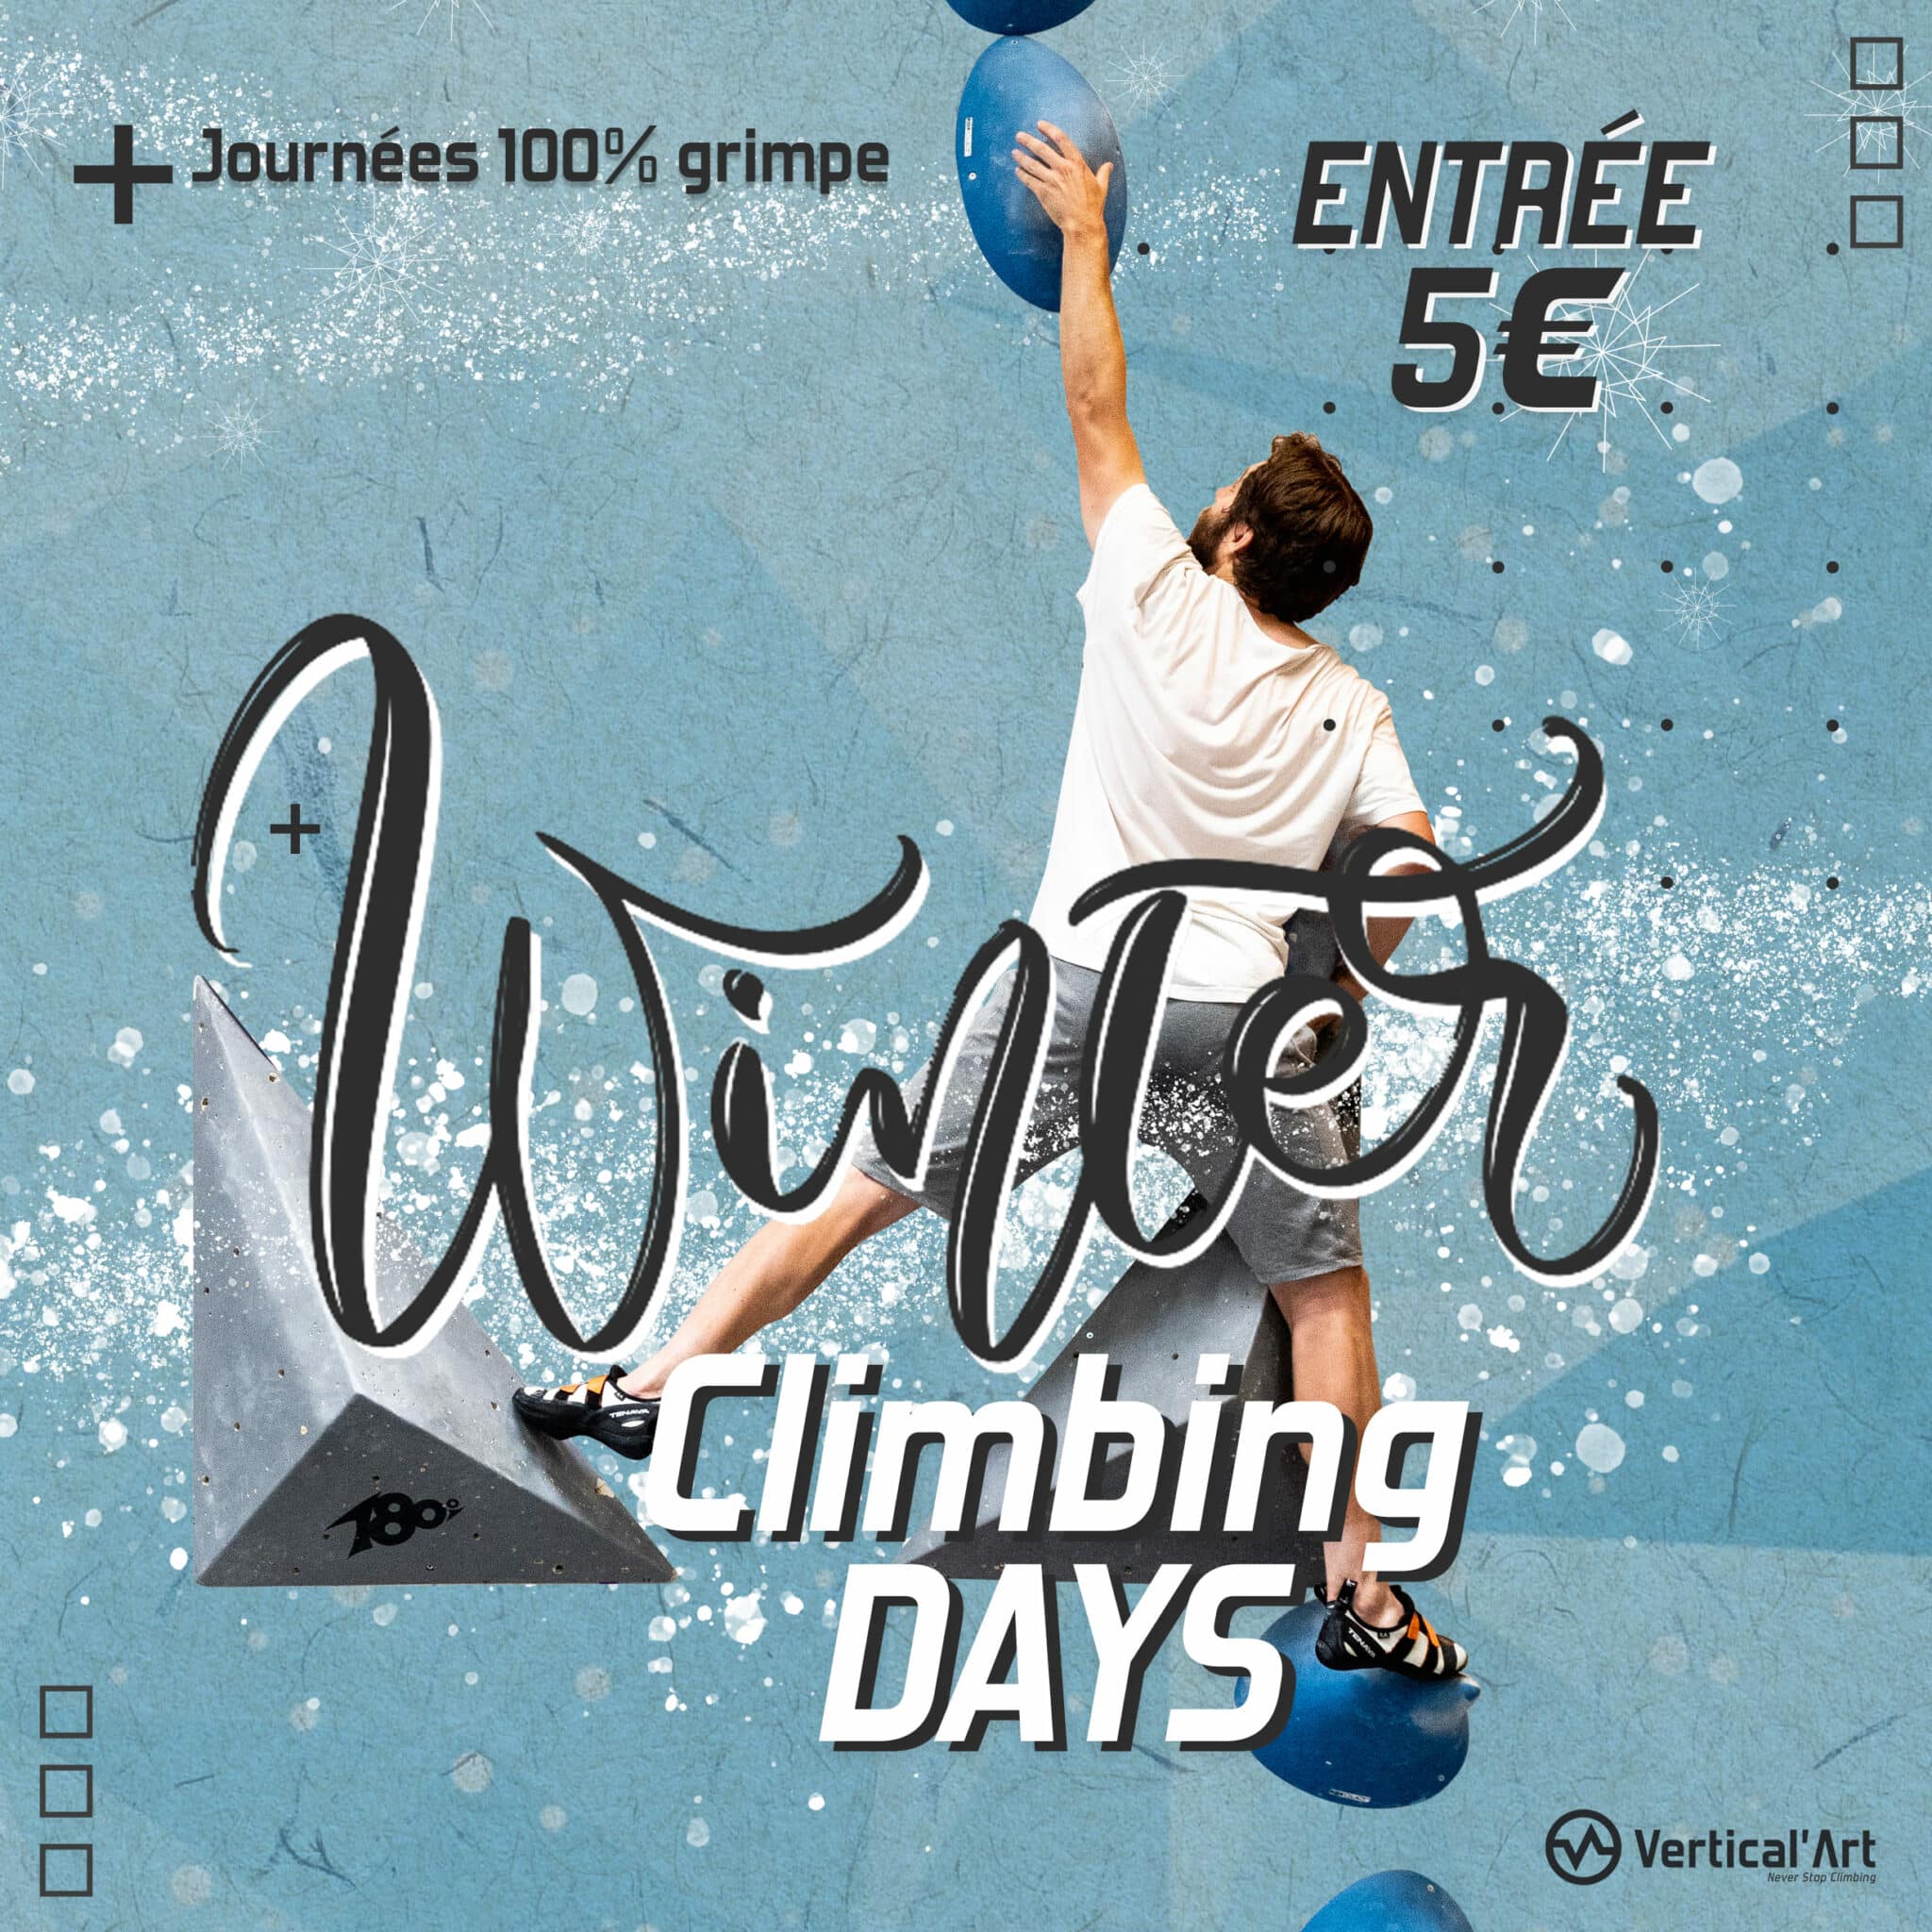 Winter Climbing Days à Vertical’Art Rungis, escalade à 5€ pour tous pendant les vacances d'hiver